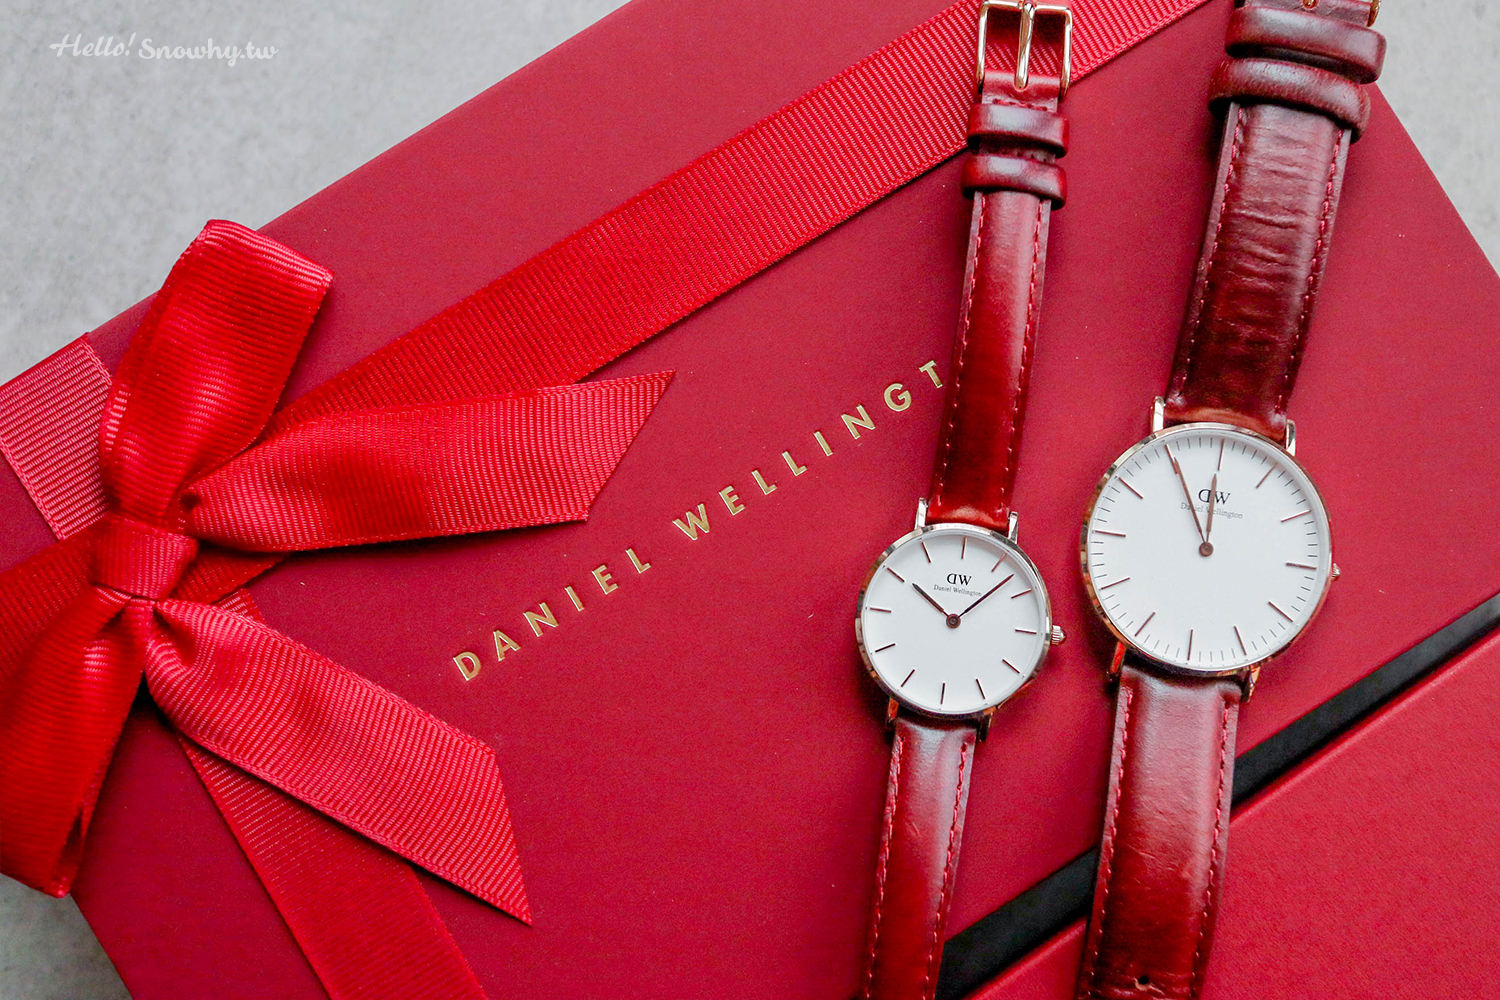 dw,dw折扣碼,dw手錶,DW讀者專屬折扣碼,snowhy,Daniel Wellington,瑞典設計,情侶對錶,85折